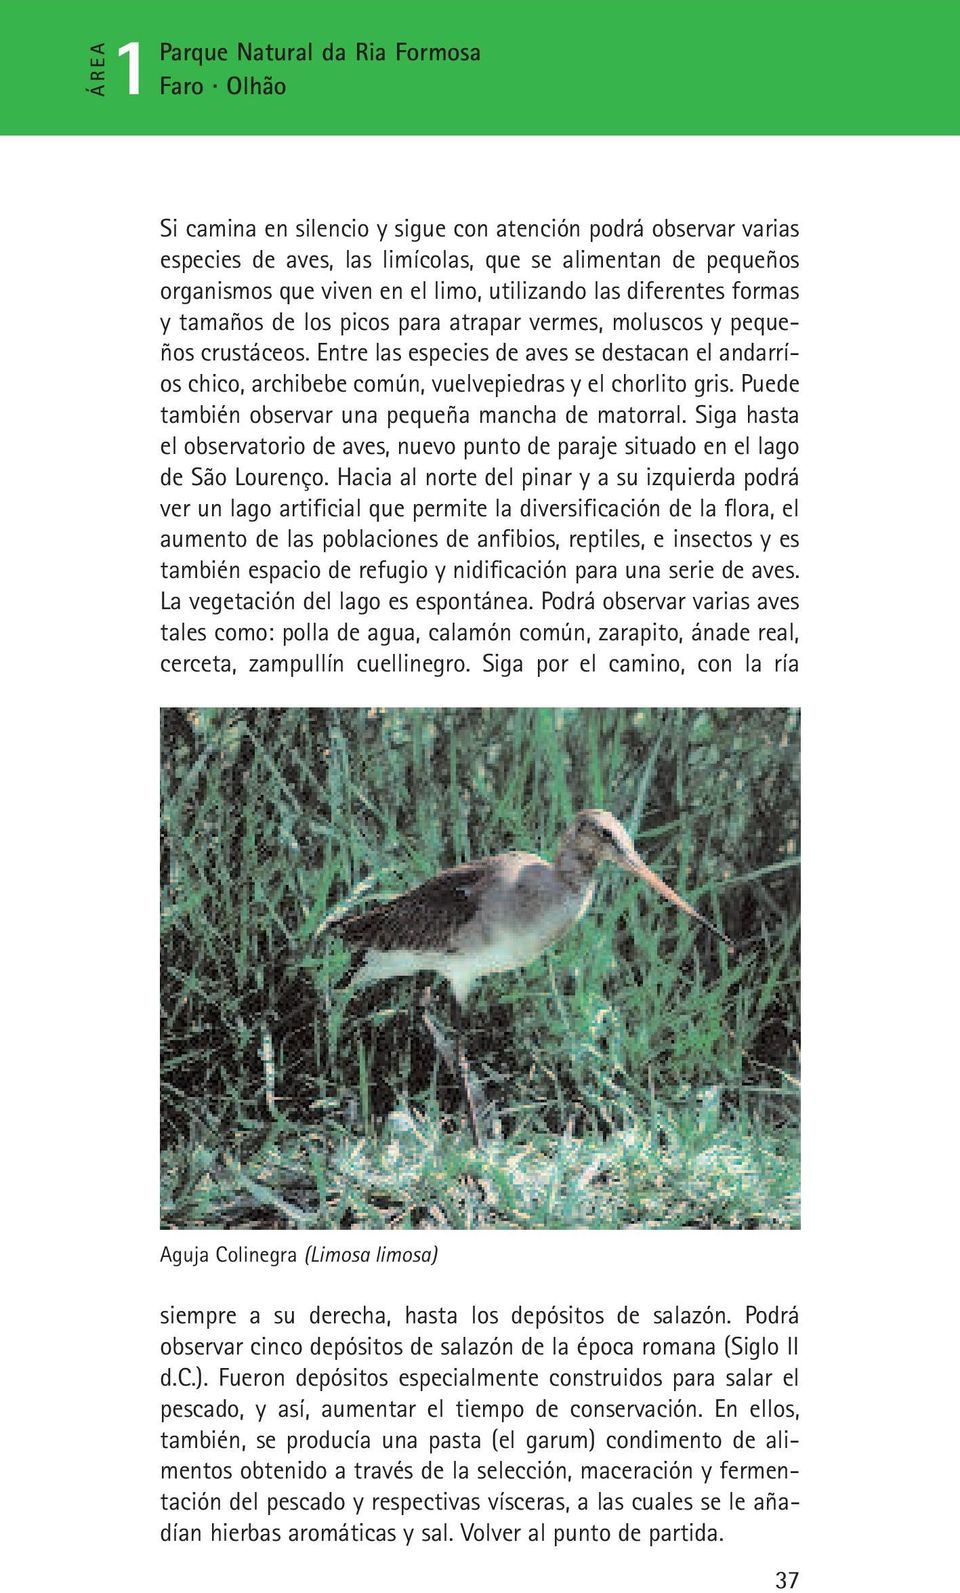 Puede también observar una pequeña mancha de matorral. Siga hasta el observatorio de aves, nuevo punto de paraje situado en el lago de São Lourenço.